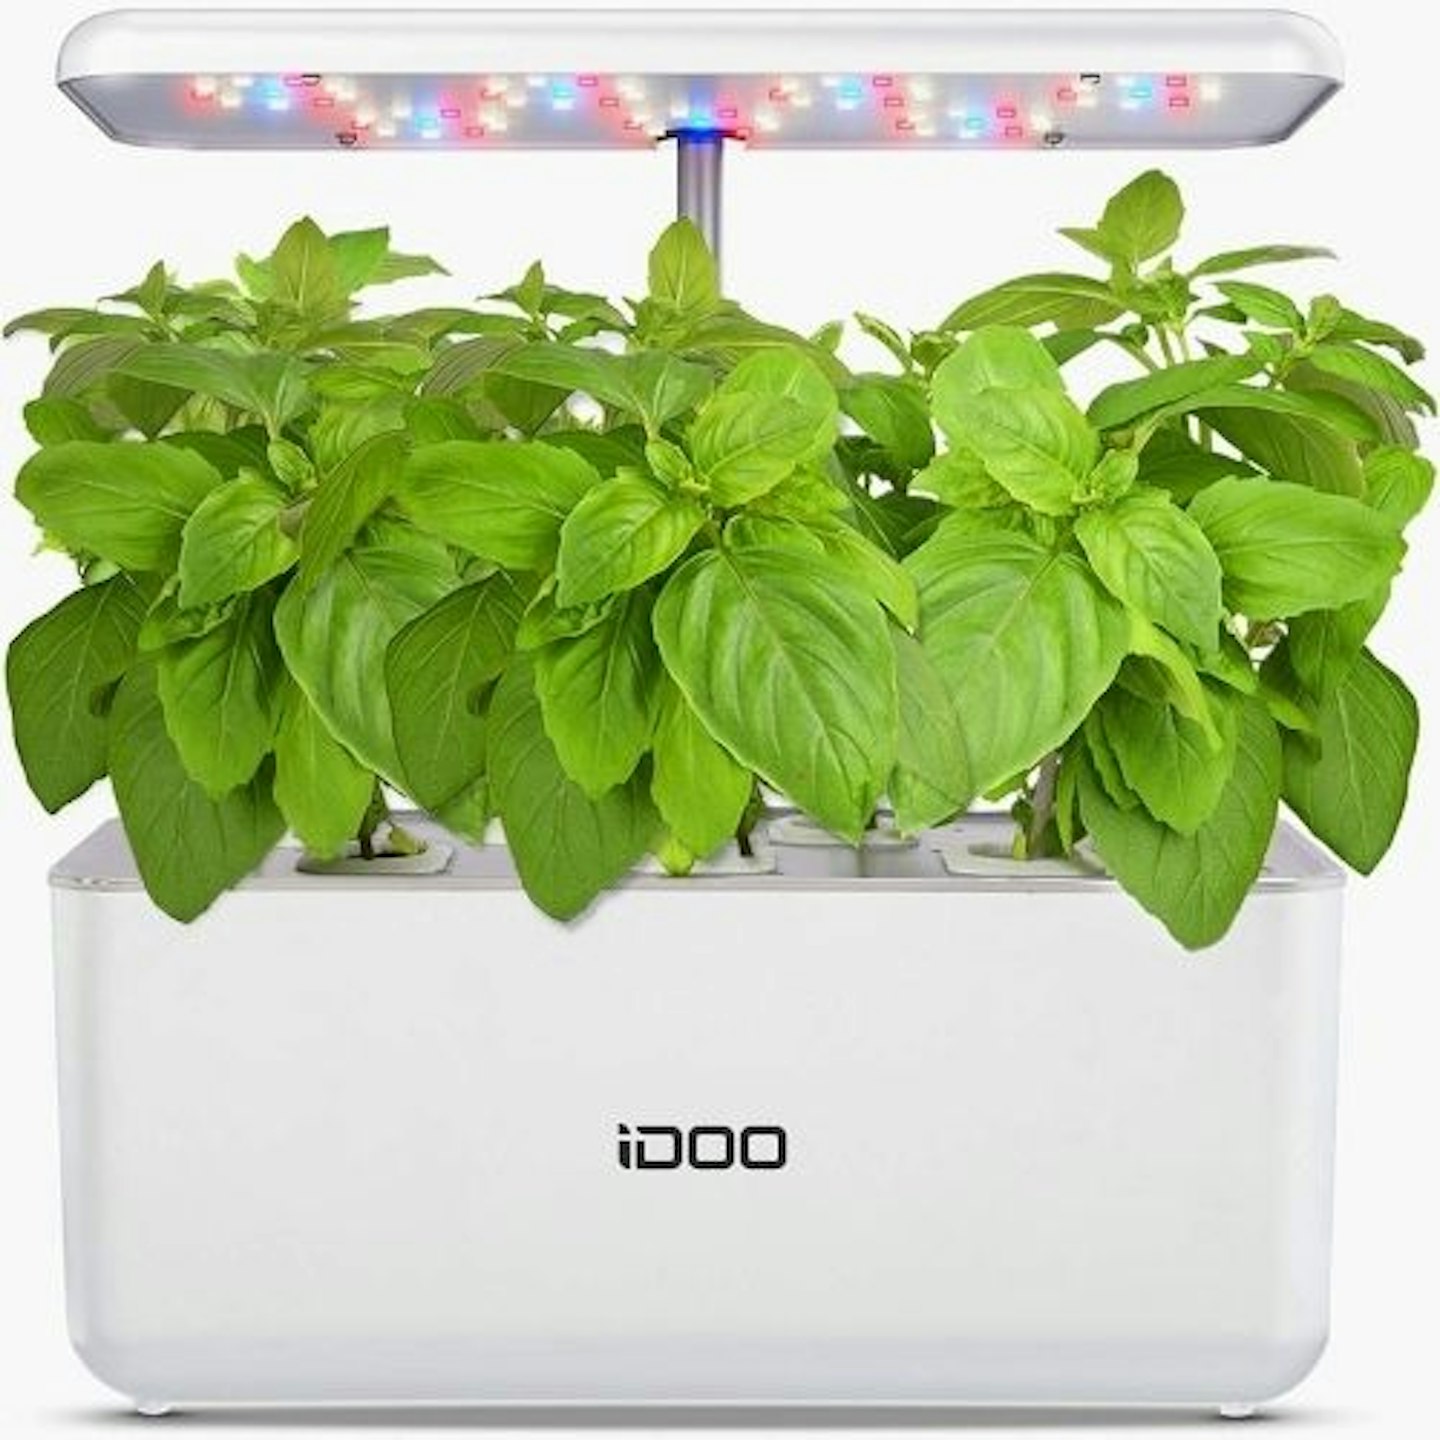 iDOO Indoor Herb Garden - Hydroponics Growing System